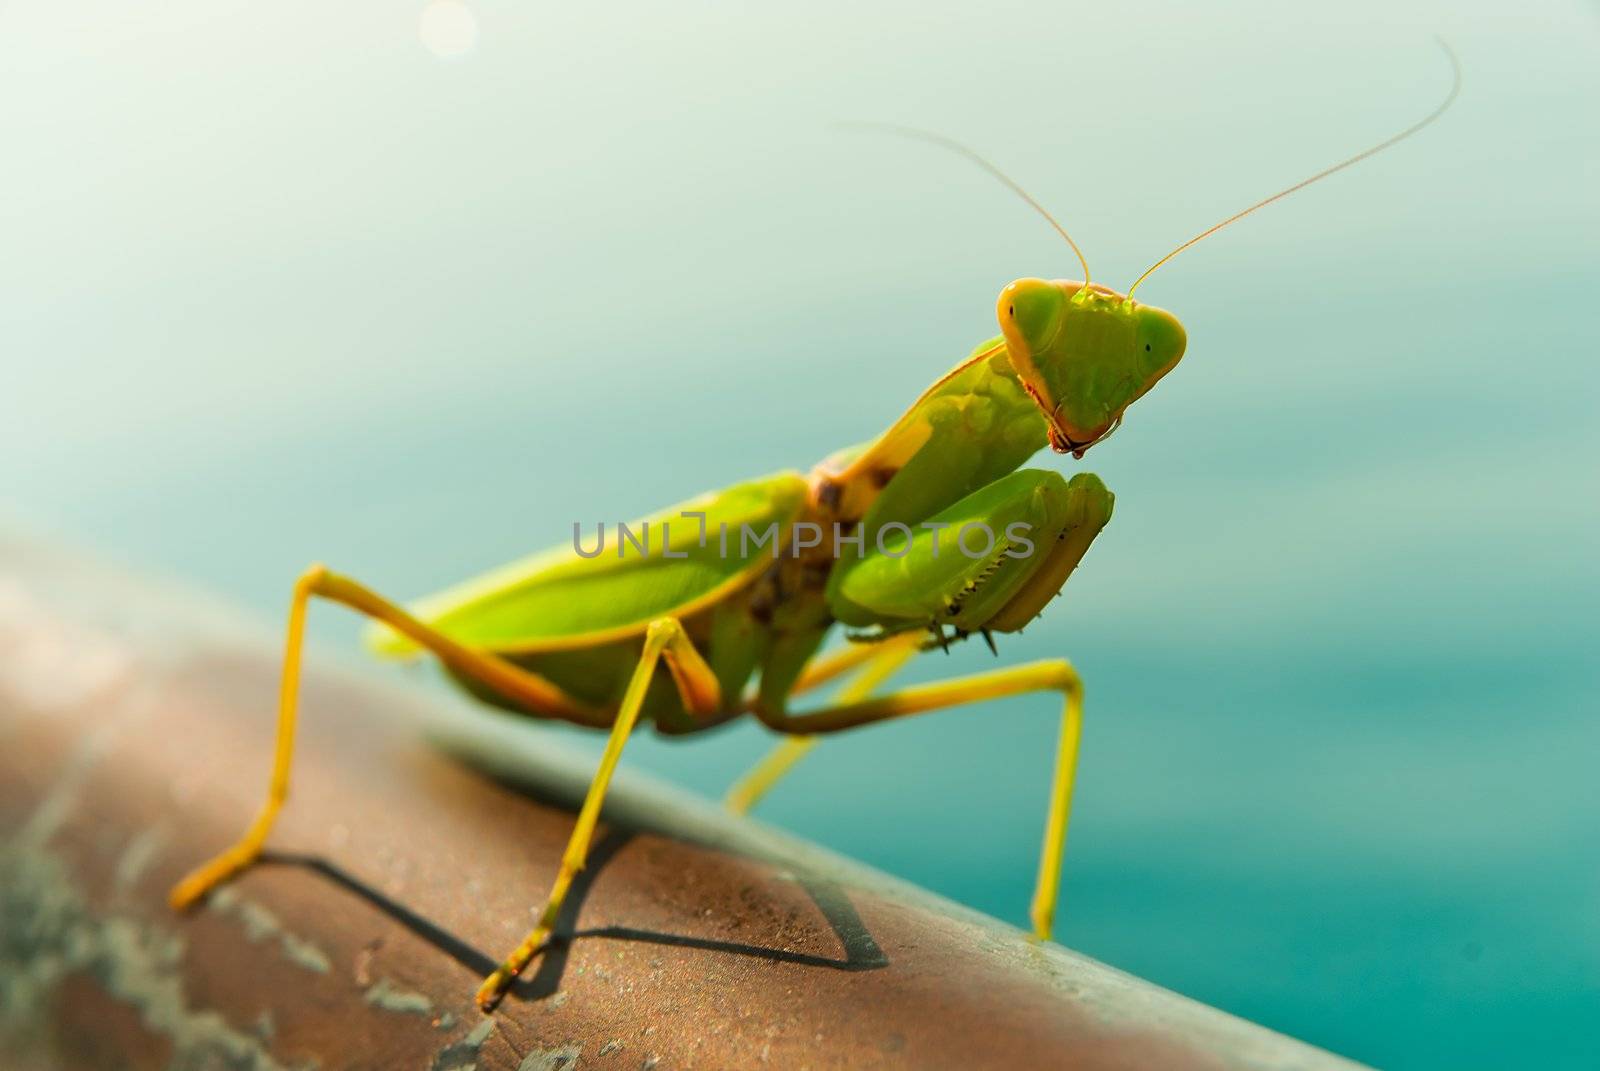 A Mantis posing for the camera.